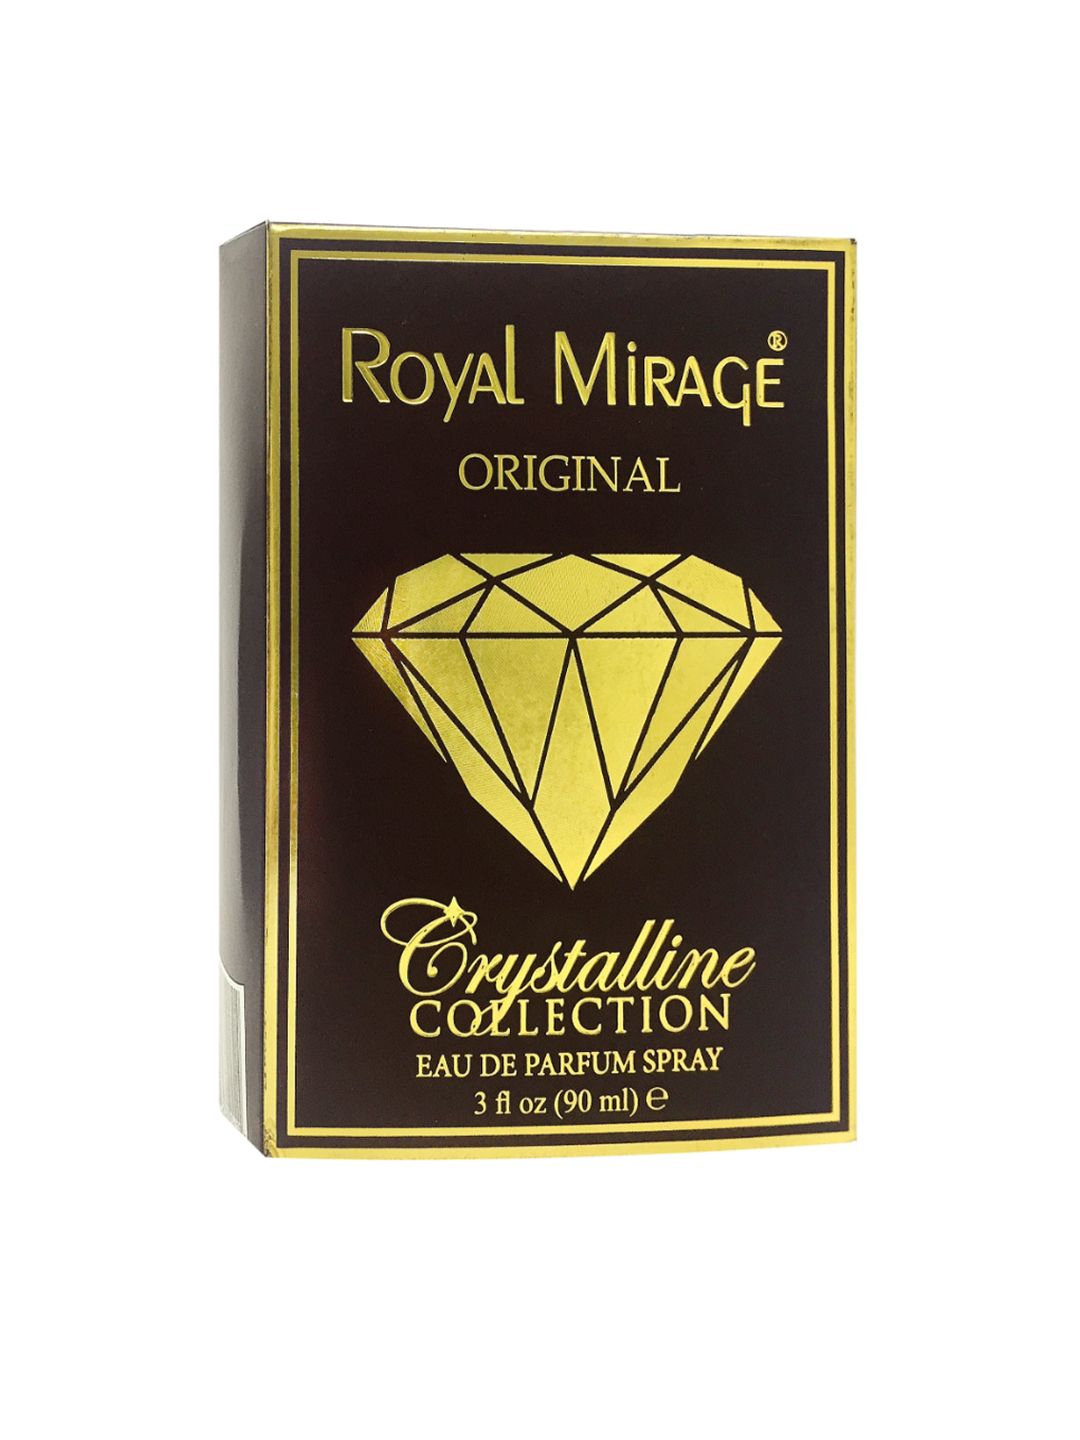 Royal Mirage Original Crystalline Collection Long Lasting Eau De Parfum Spray 90 ml Price in India